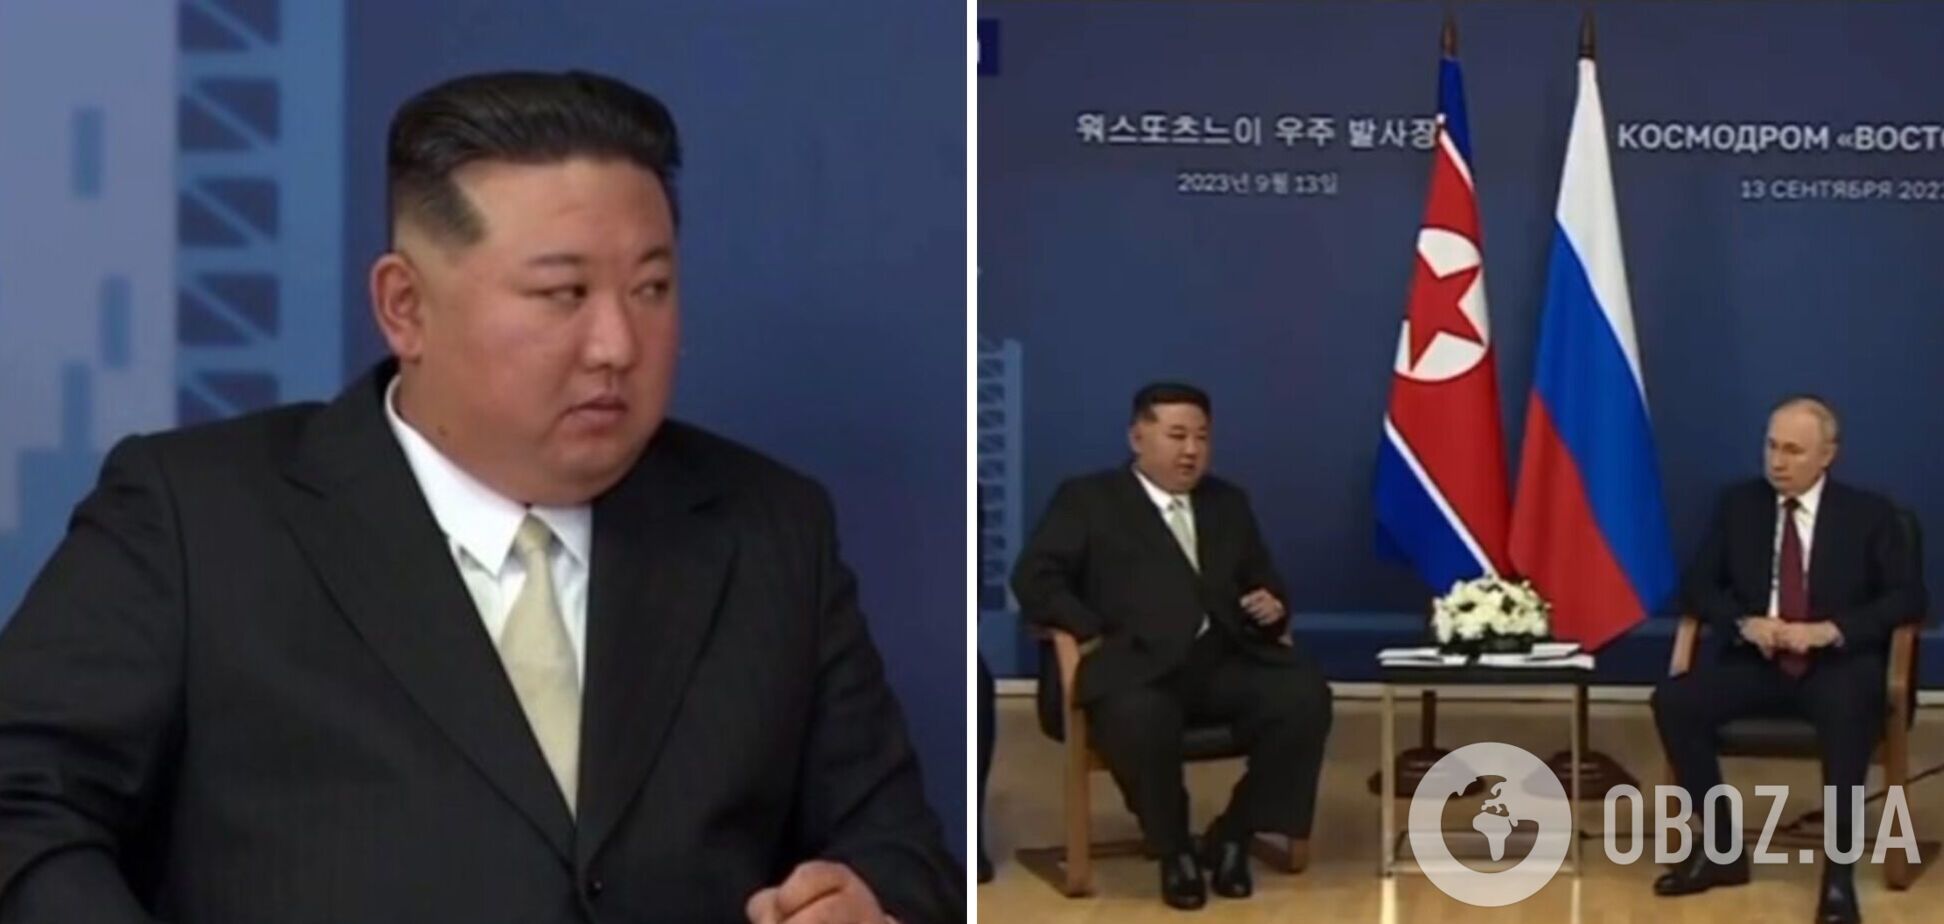 Кім Чен Ин на зустрічі з Путіним заявив, що РФ 'піднялася на священну боротьбу за свій суверенітет'. Відео